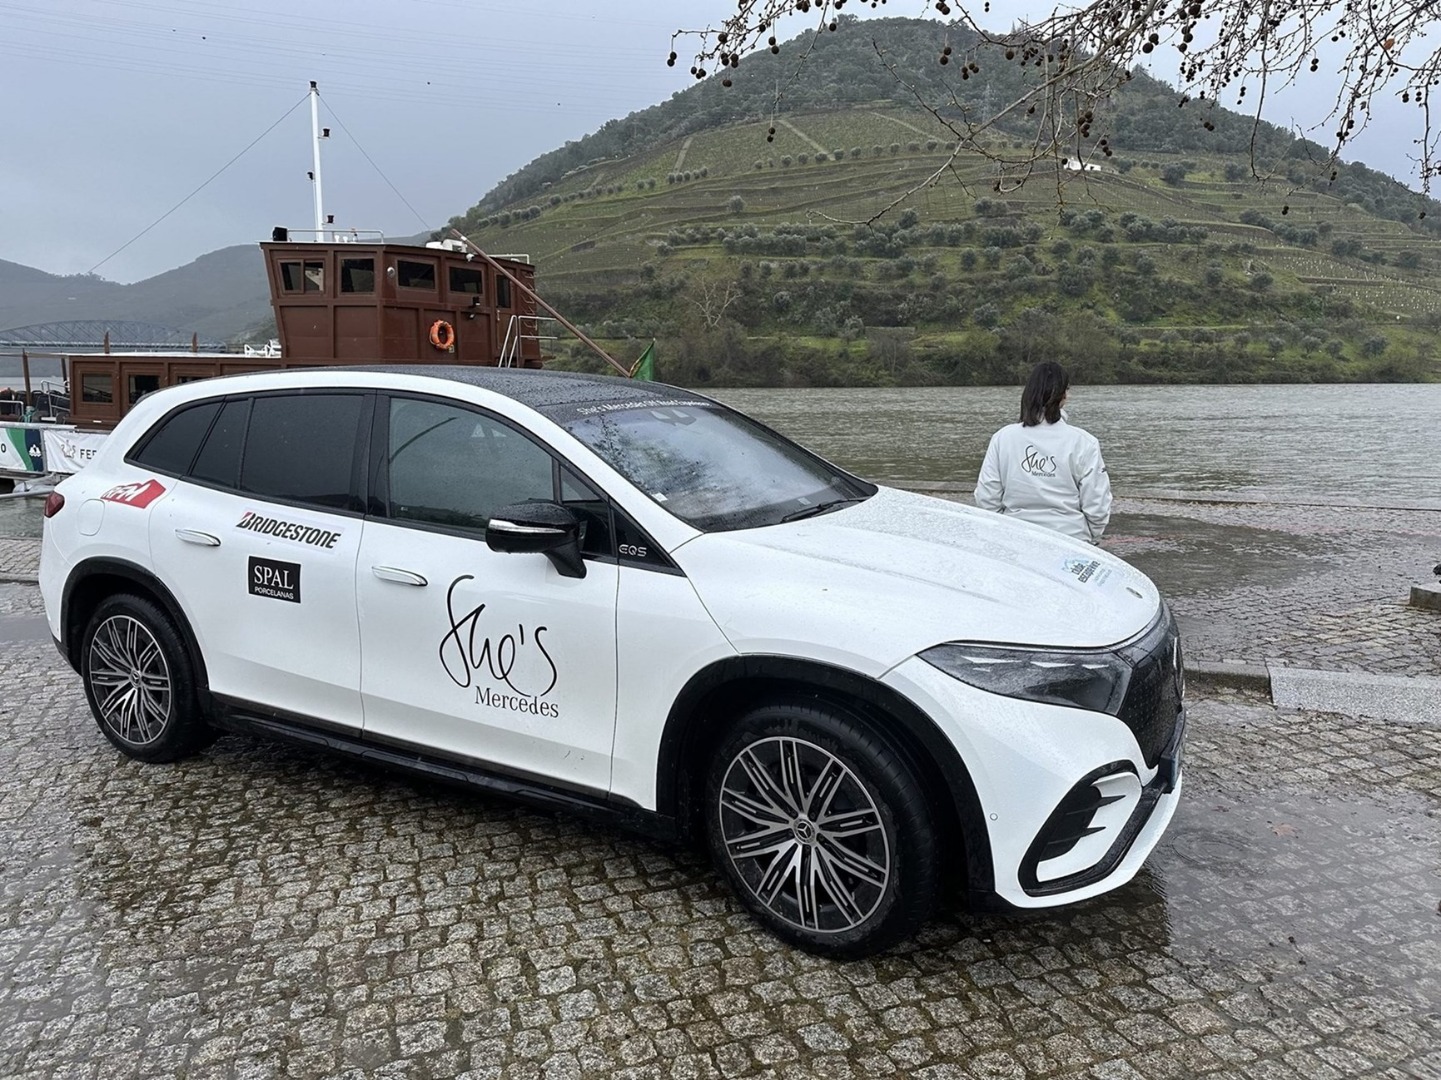 Douro recebe ‘She’s Mercedes Off Road Experience’: sistema de tração integral do SUV vai ser colocado à prova